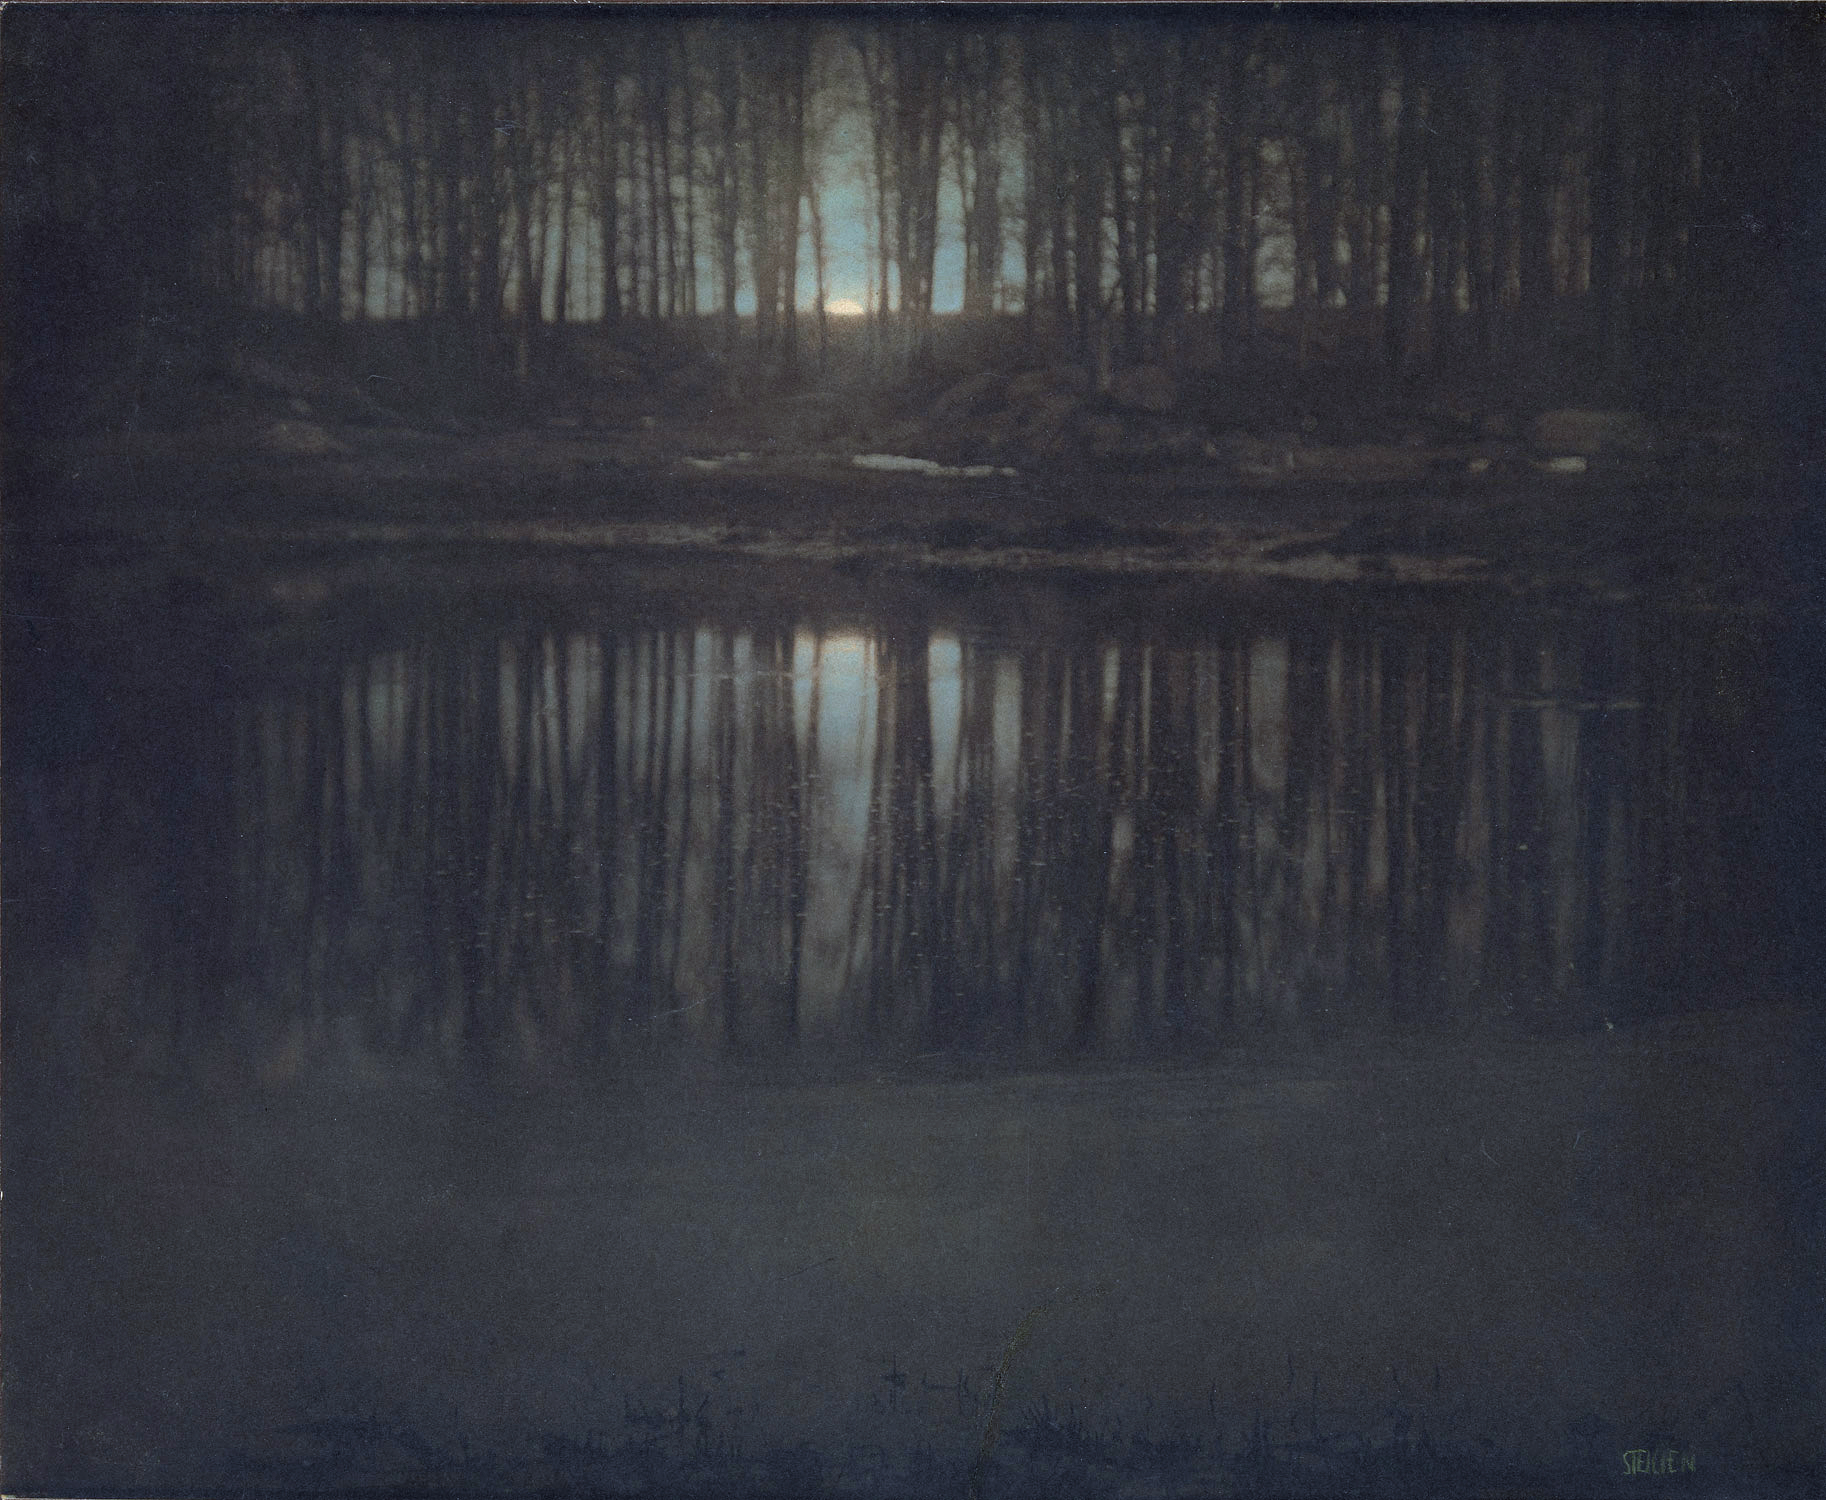 The Pond--Moonlight, photo by Edward Steichen, 1904